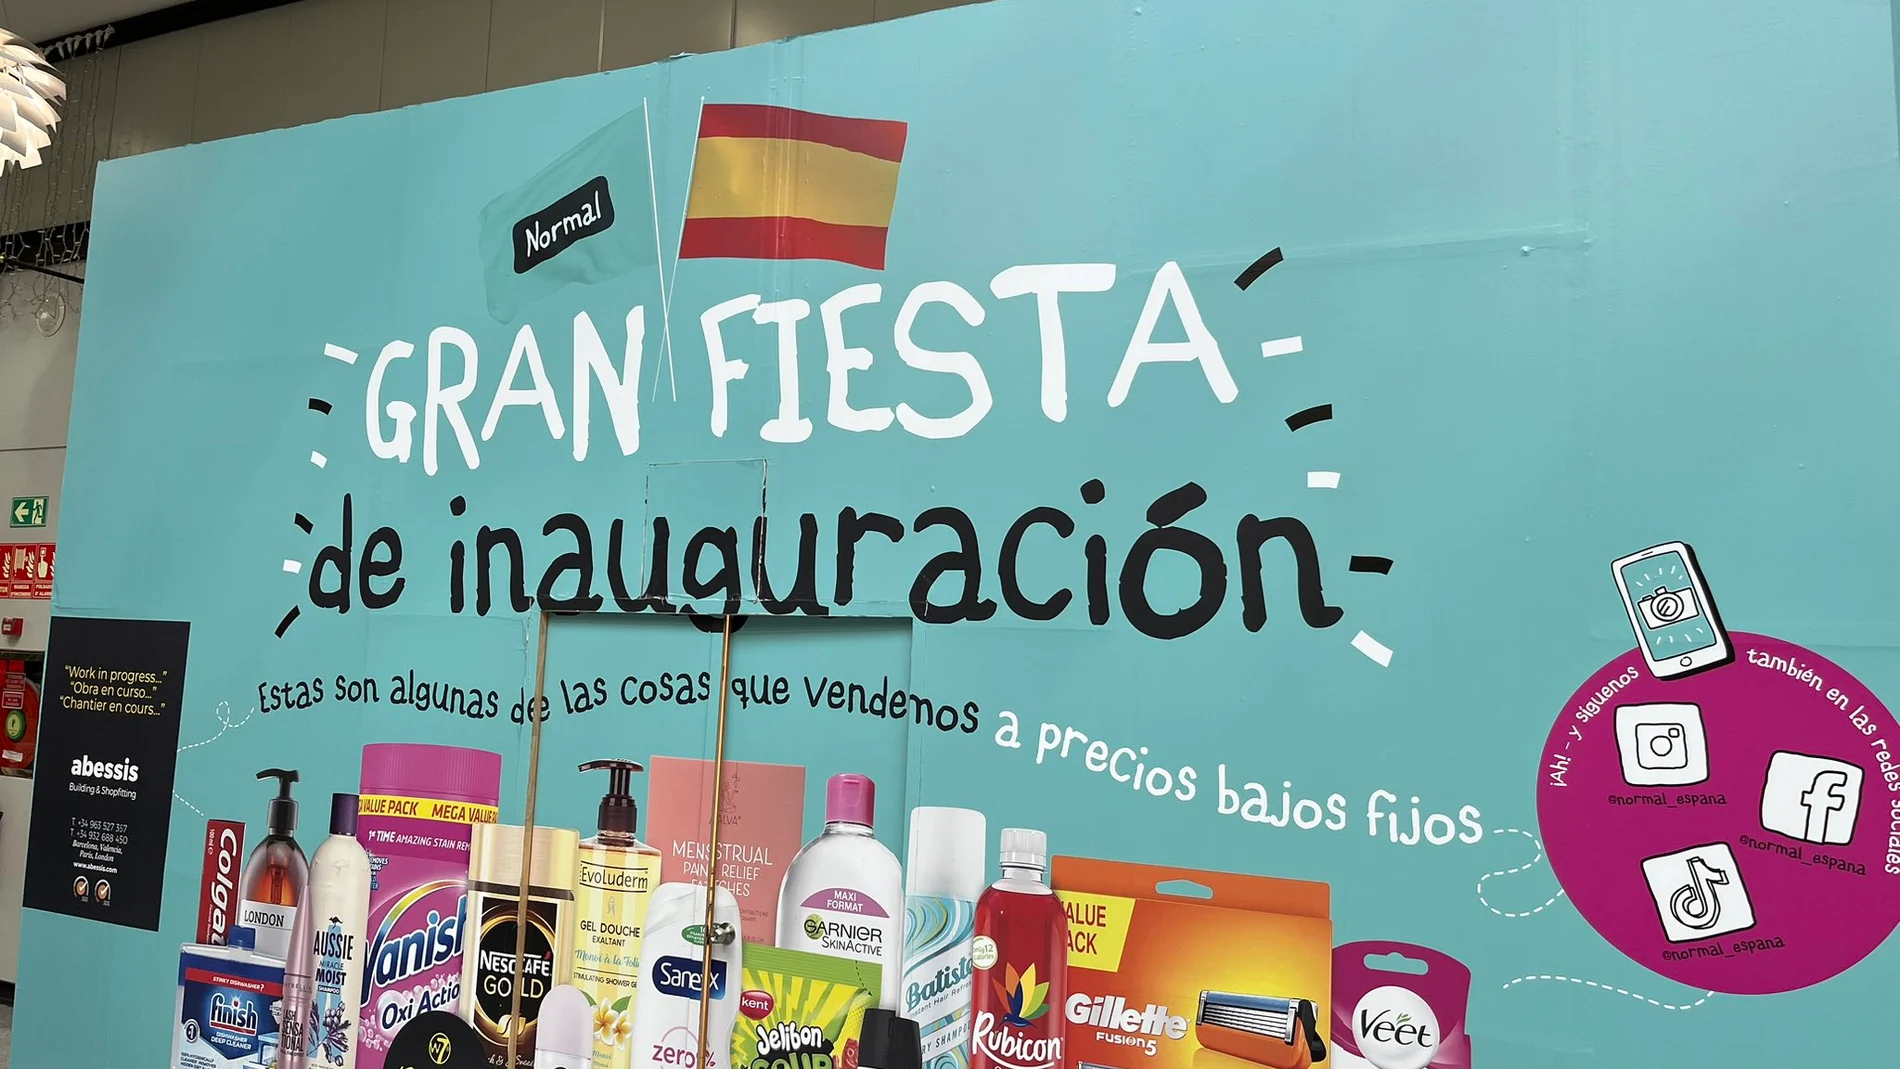 La inauguración de la tienda, en Mataró